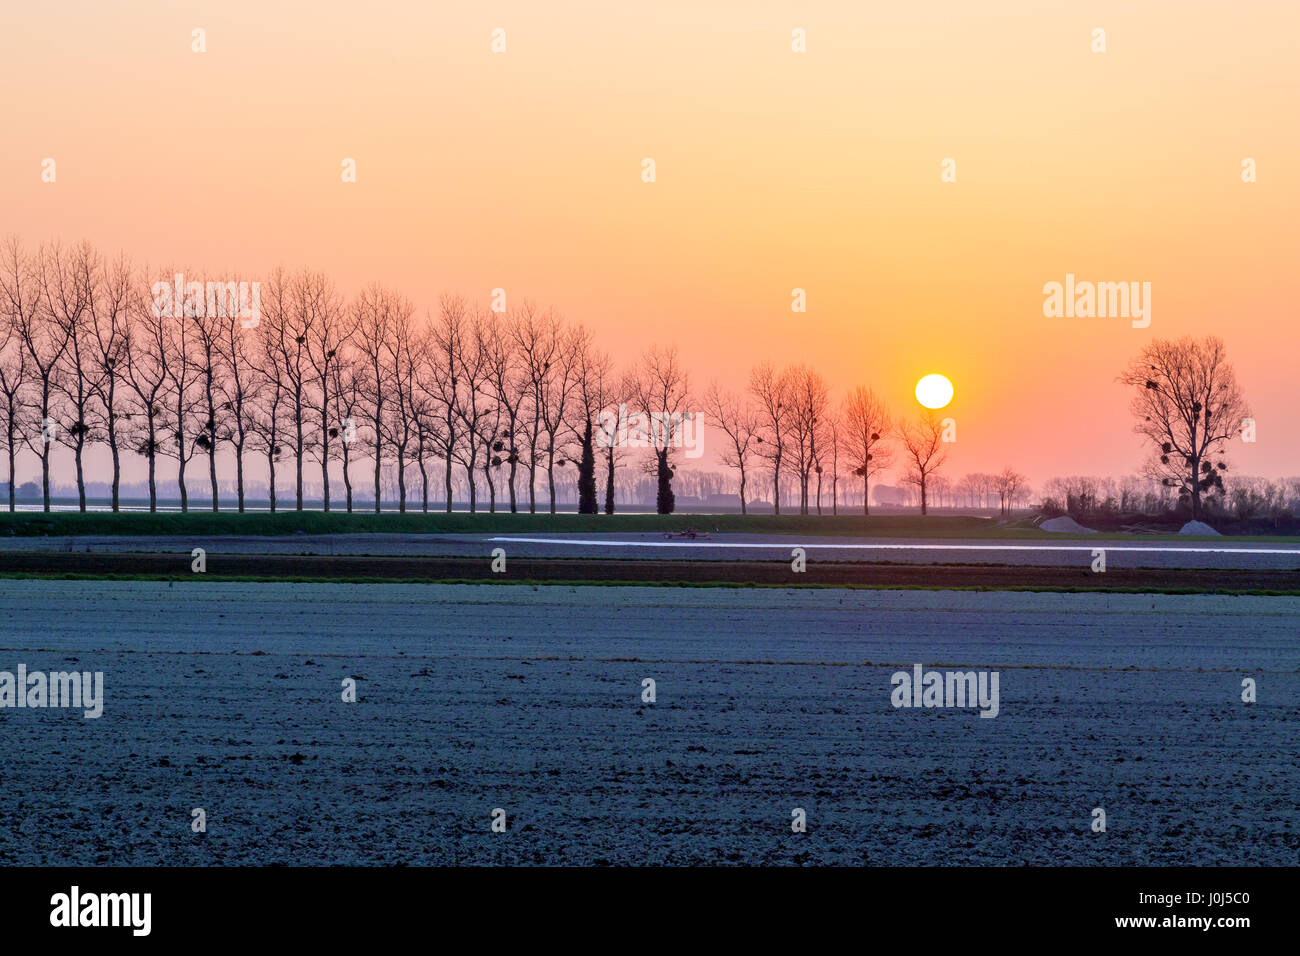 Rangée d'arbres sans feuilles et spectaculaire coucher de soleil dans le paysage rural, Normandie, France. Banque D'Images